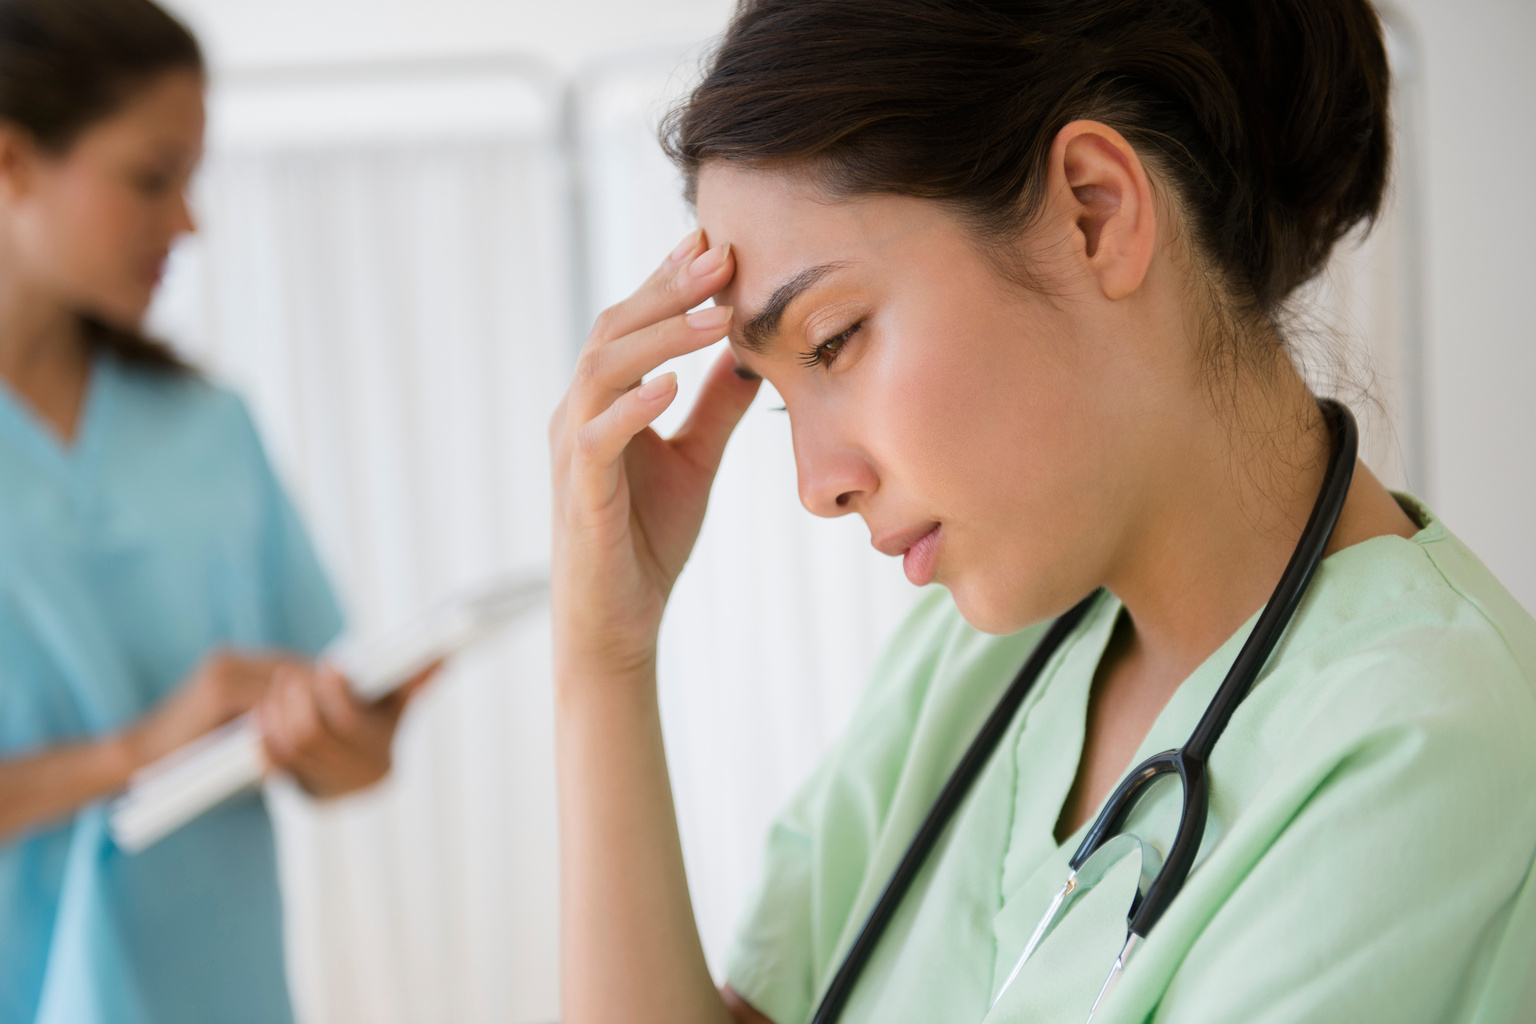 A dual role nurse initiative to combat burnout raises retention